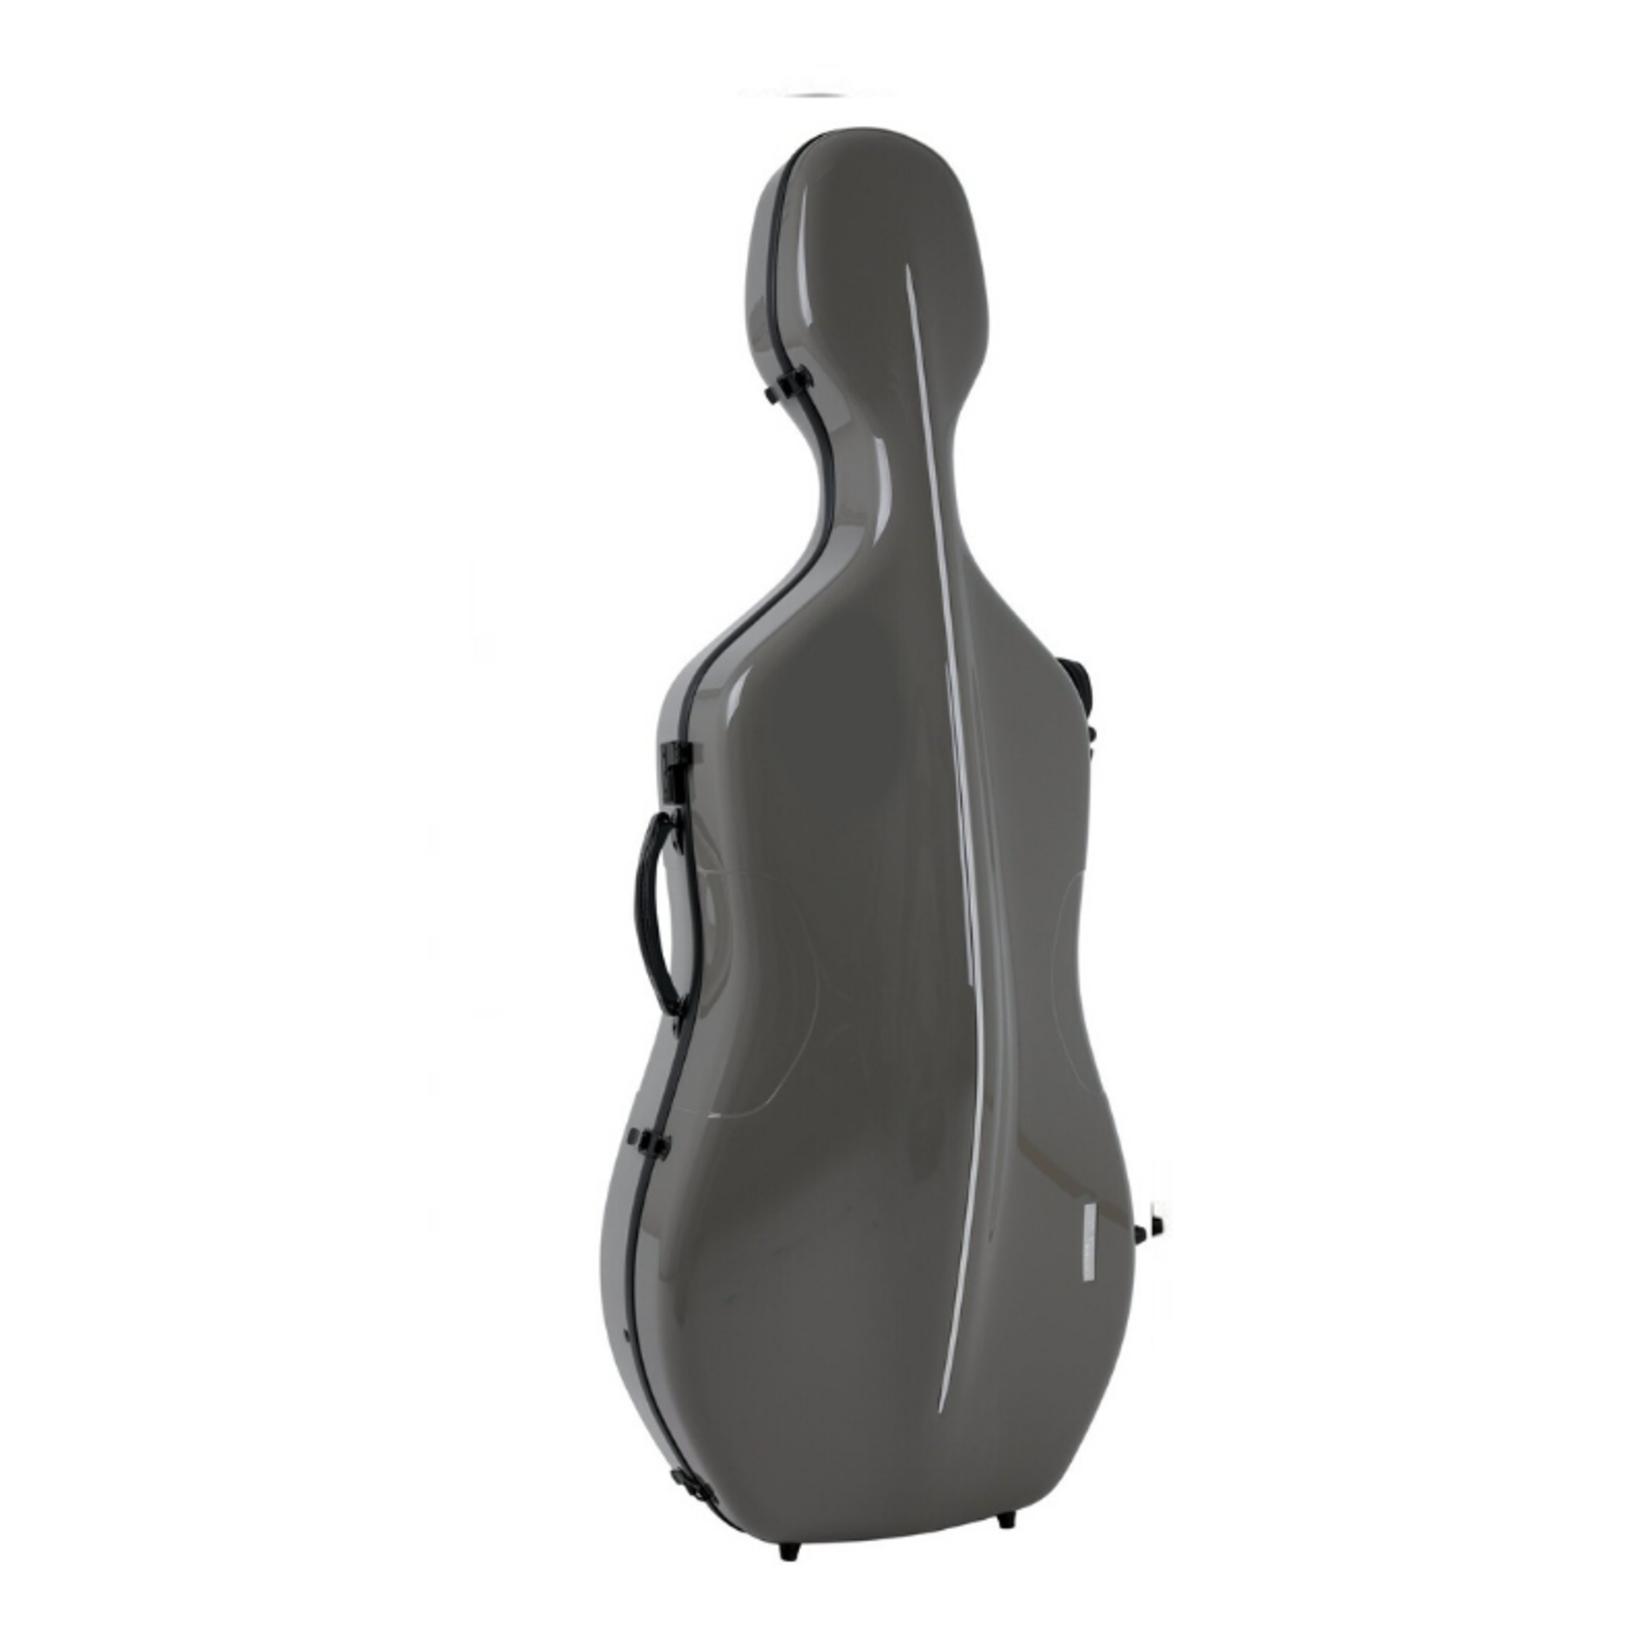 GEWA Air Etui en carbone pour violoncelle, gris, 3,9 kg, espace pour 2 archets, brillant, protection du chevalet en aluminium, serrure à combinaison